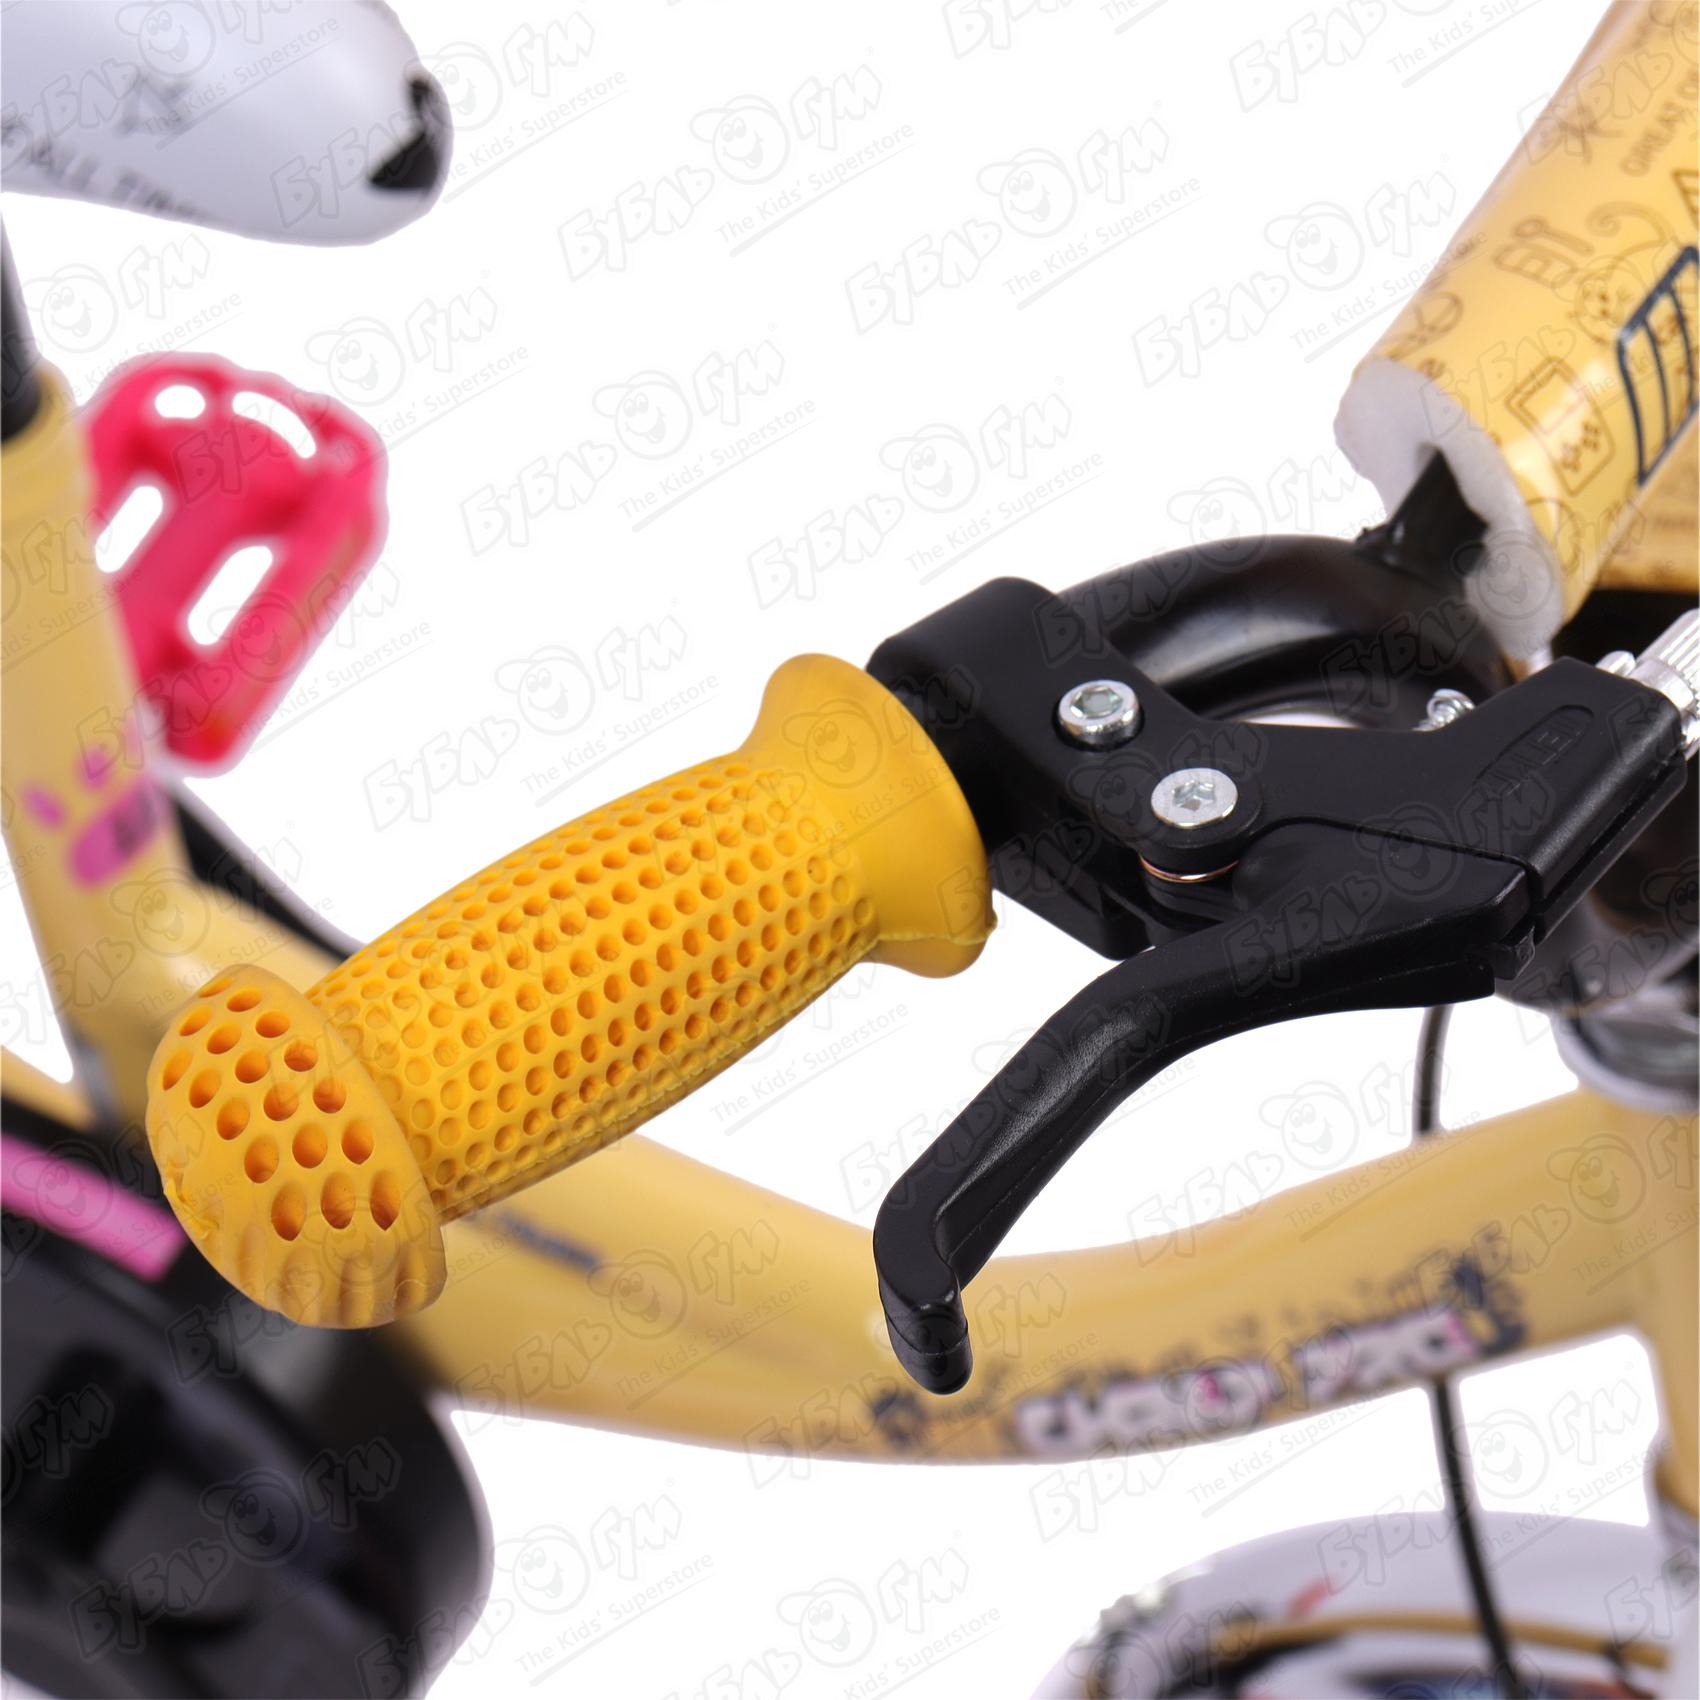 Велосипед Champ Pro детский G12, цвет желтый - фото 7